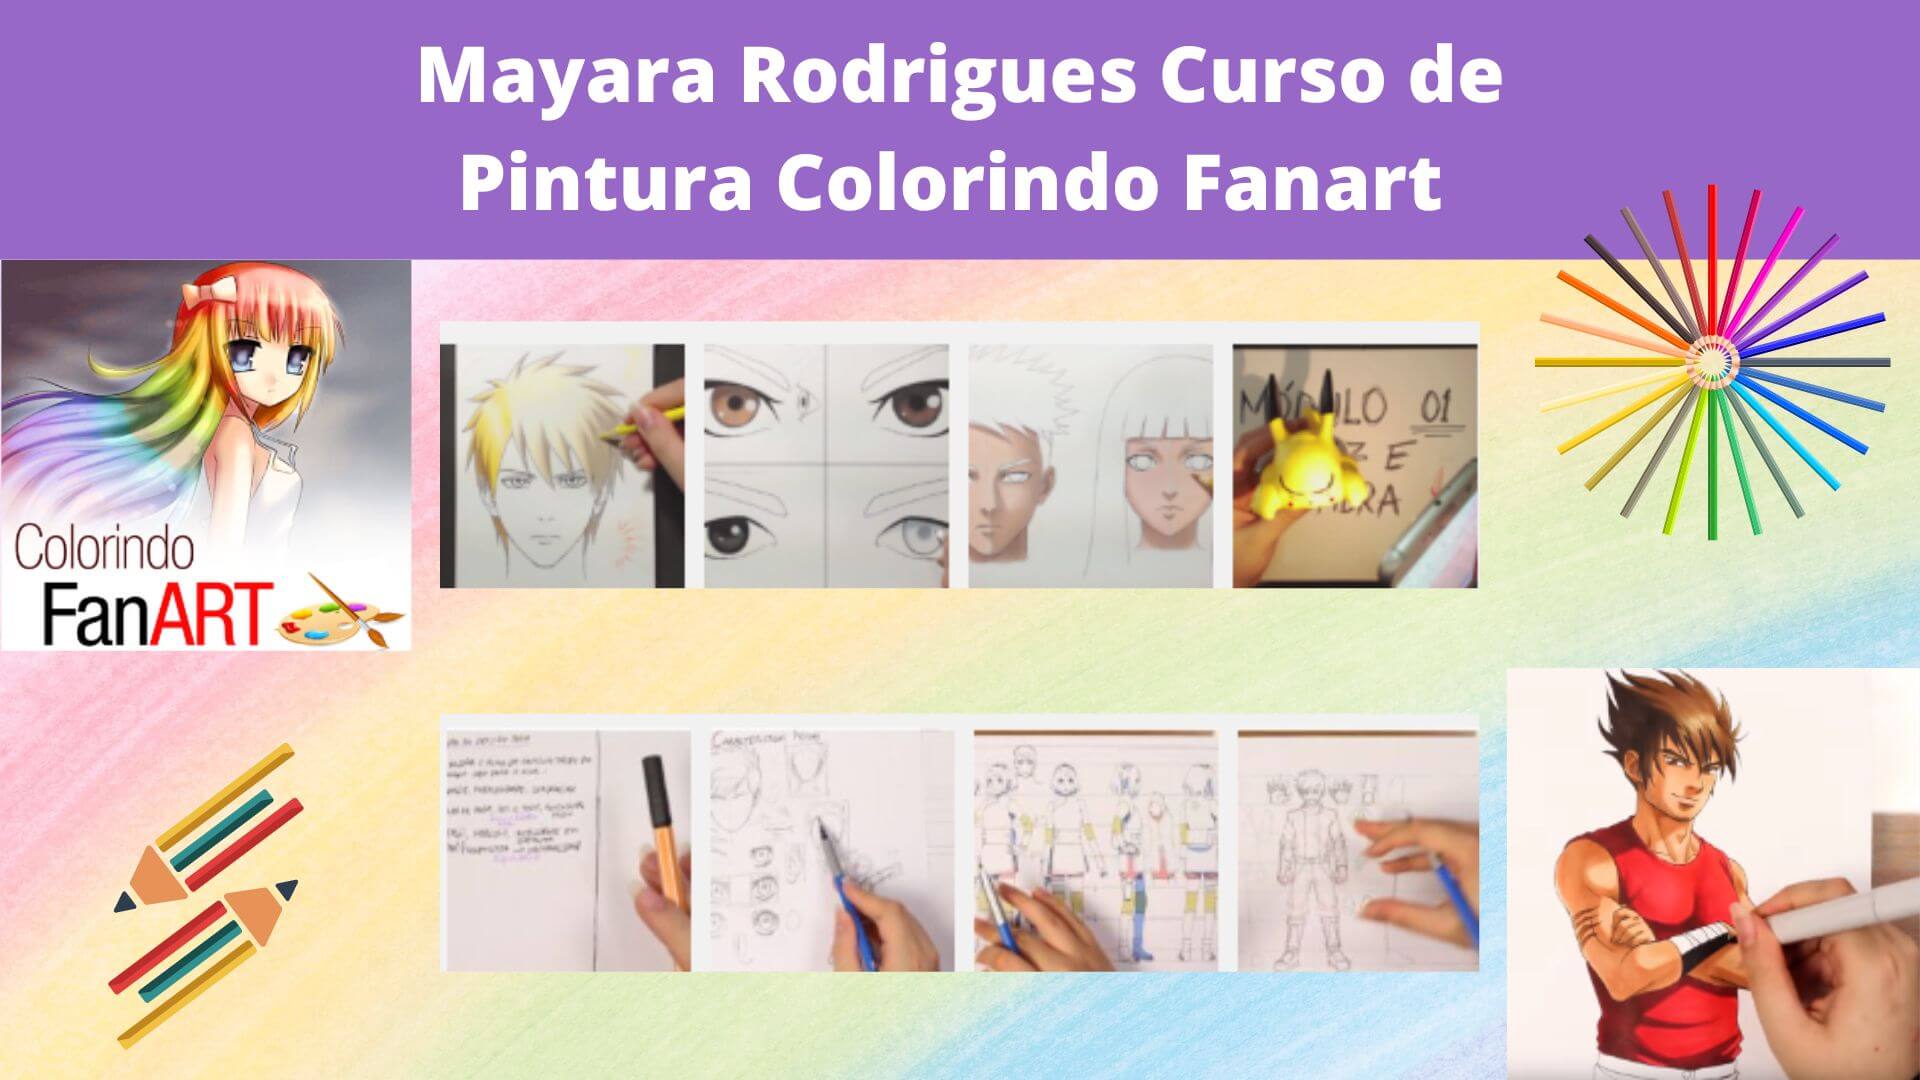 Mayara Rodrigues Curso de Pintura Colorindo Fanart